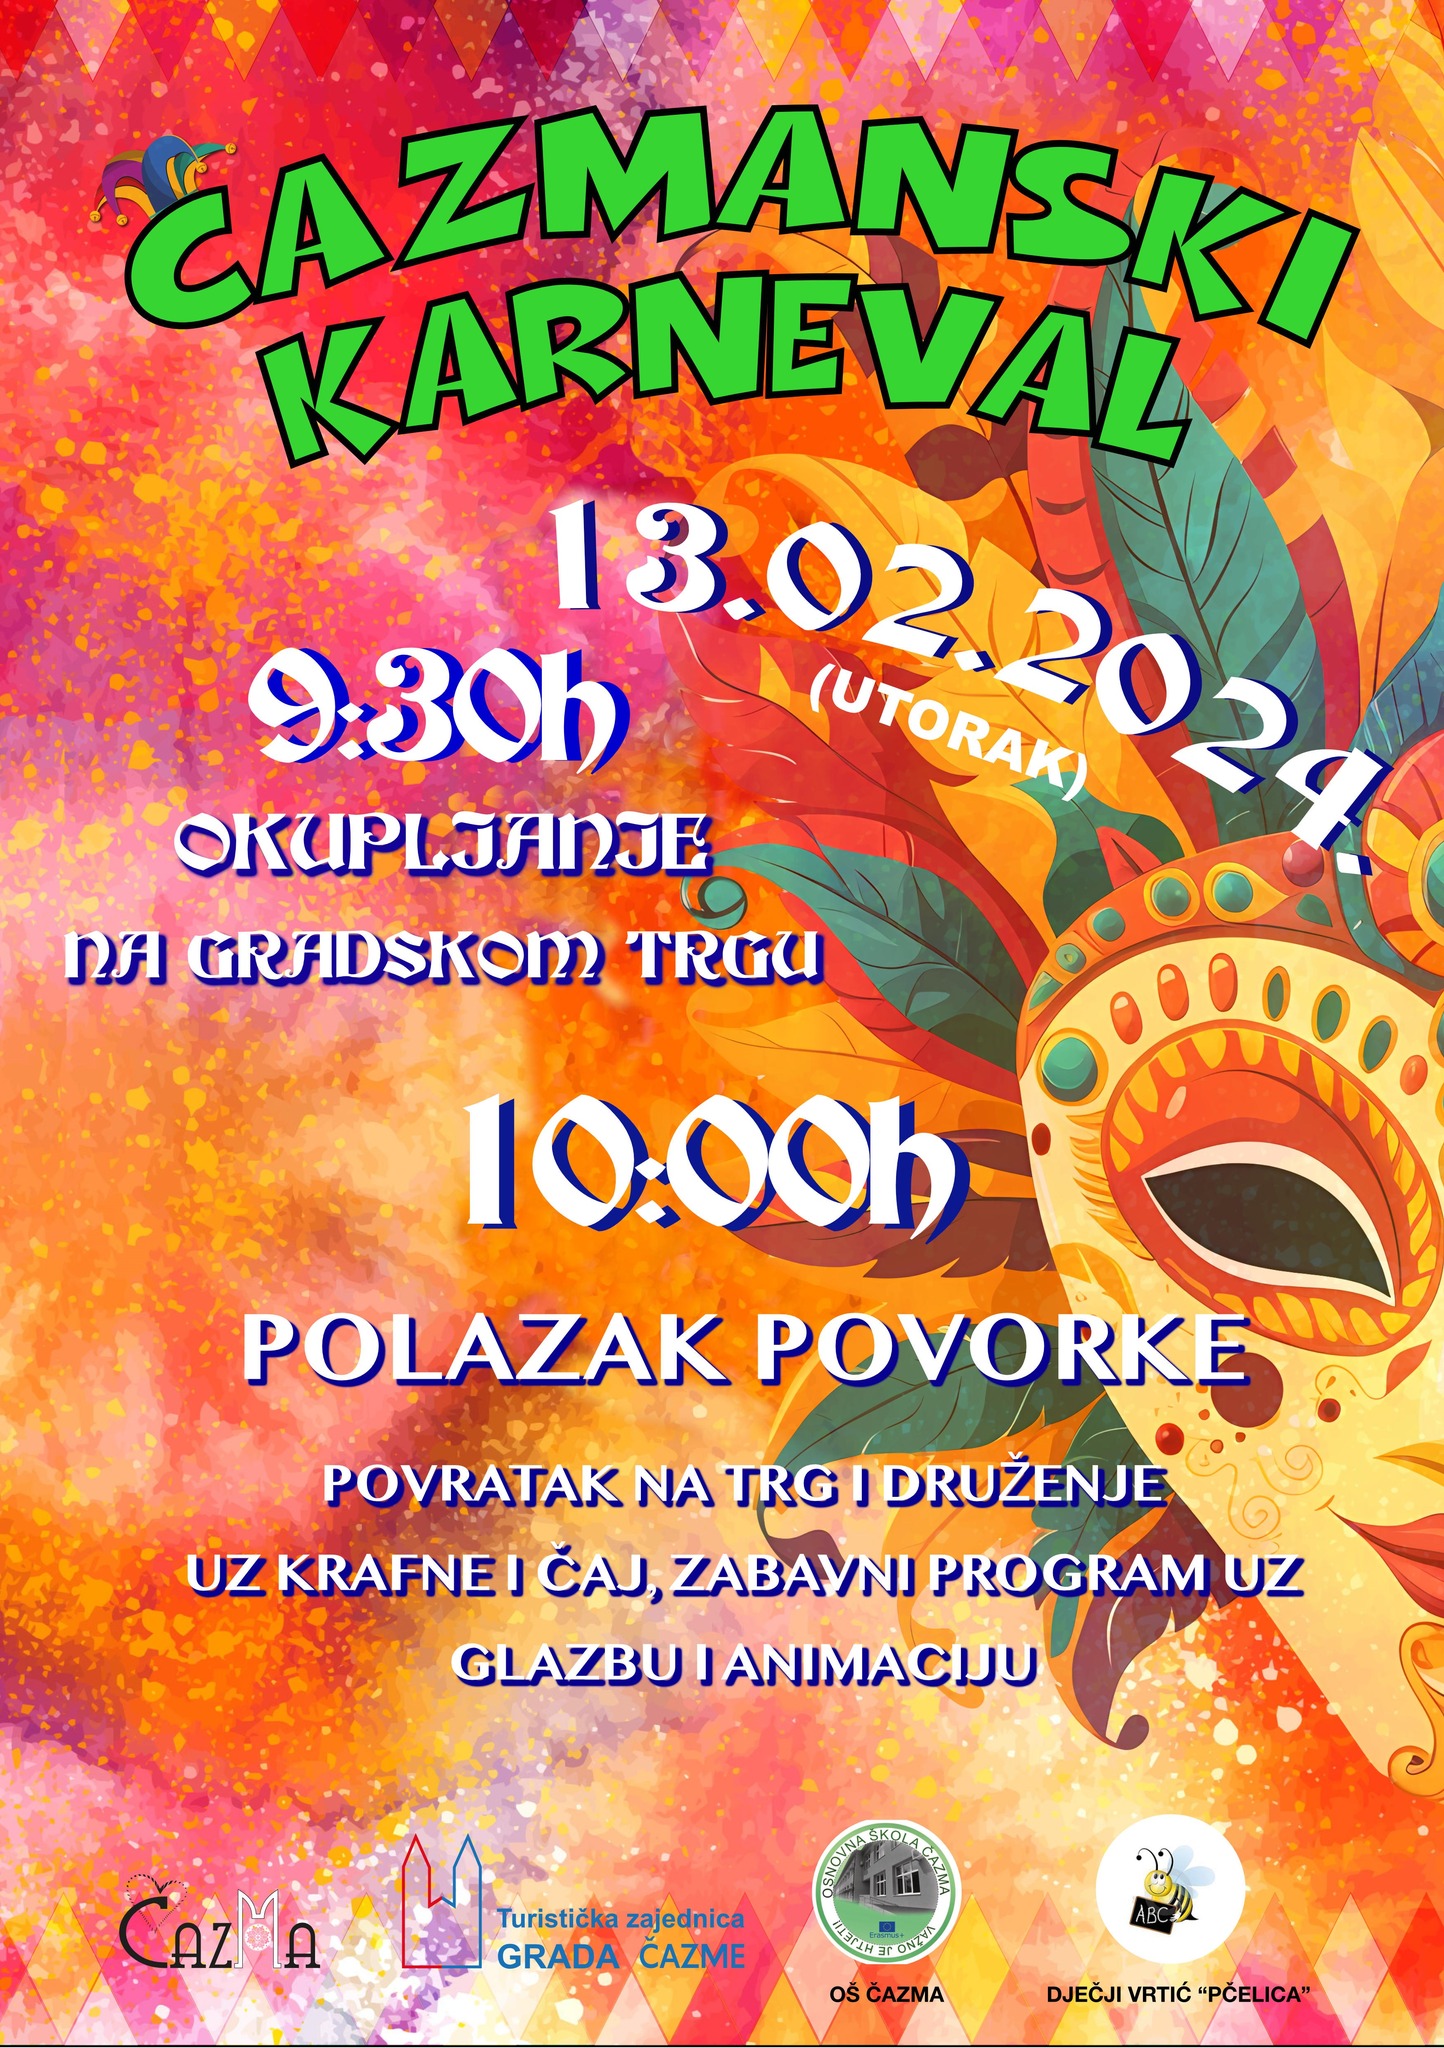 Čazmanski karneval